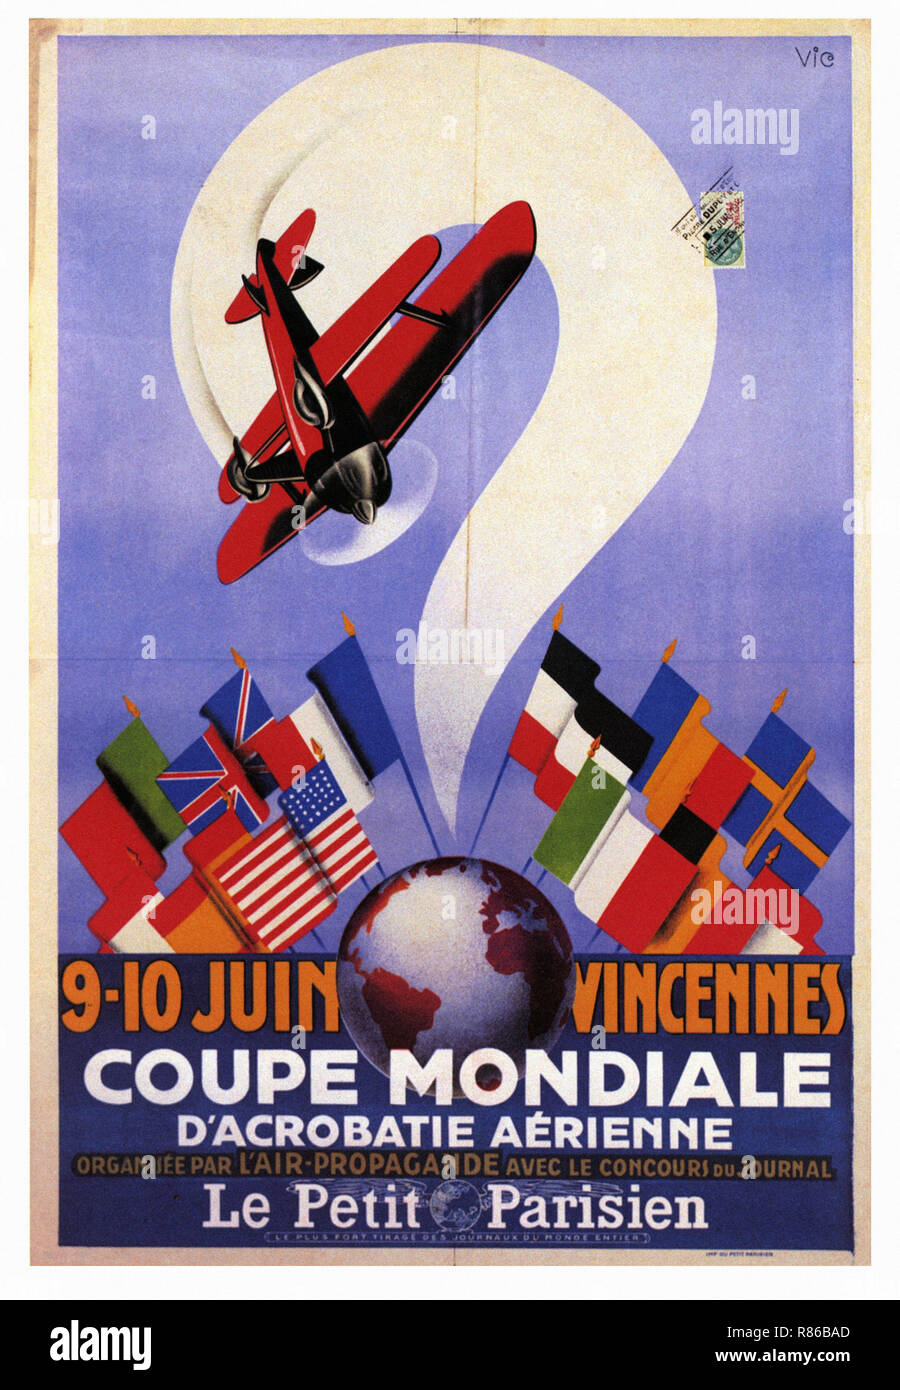 La Coupe Mondiale d'Acrobatie Aerienne Vincennes 1934 - Vintage poster pubblicitario Foto Stock